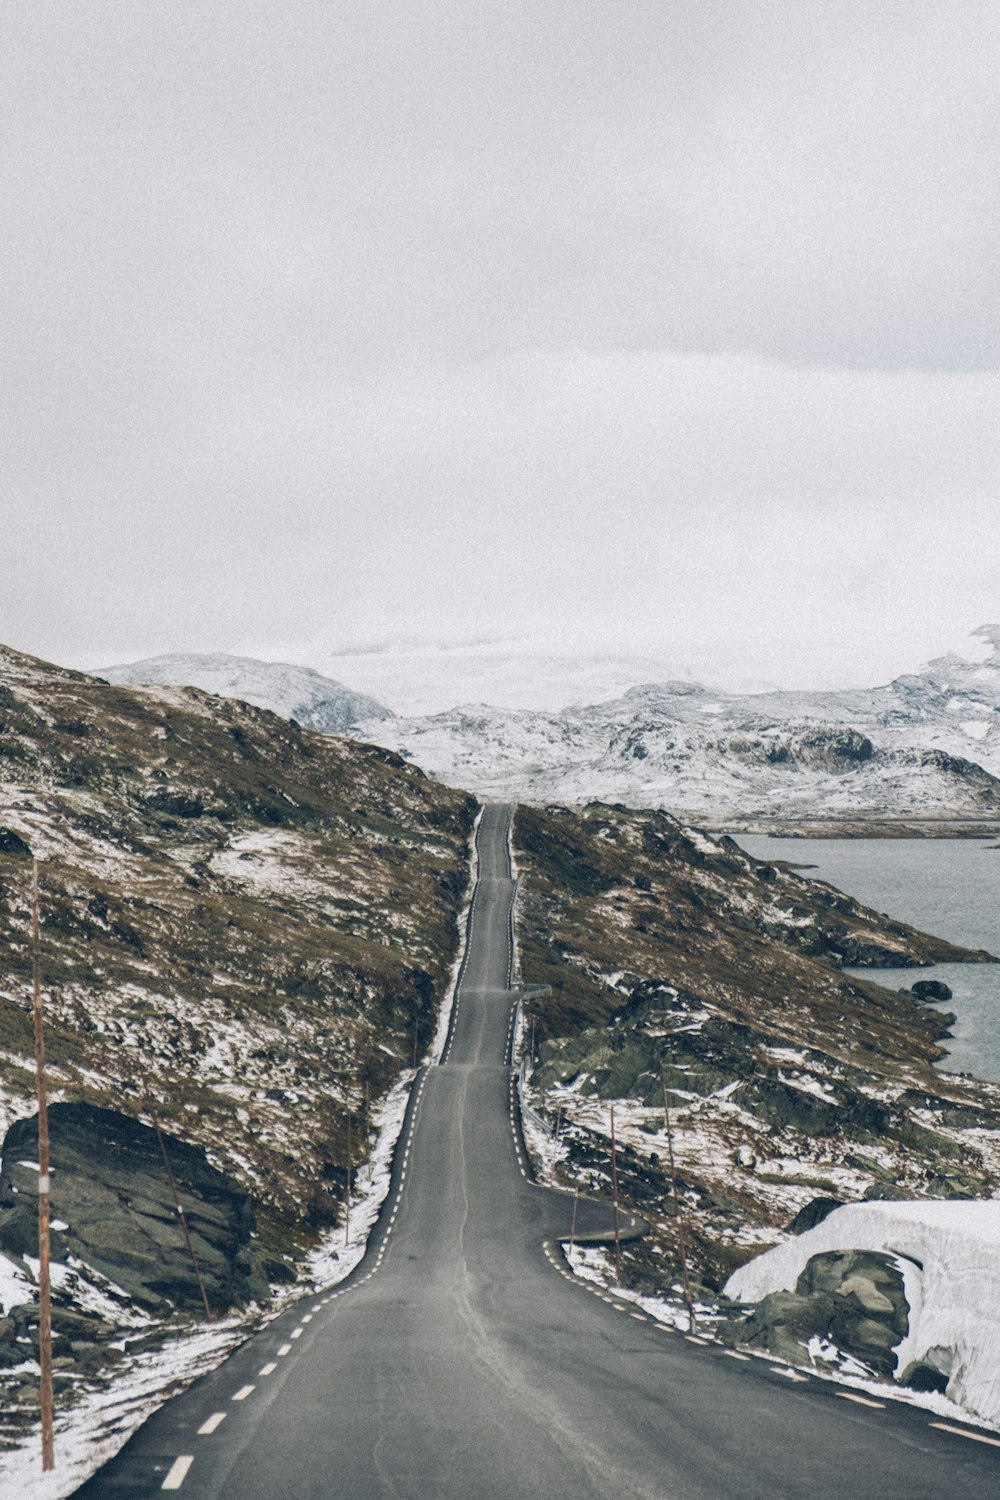 Carretera gris entre montañas marrones y verdes bajo el cielo blanco durante el día